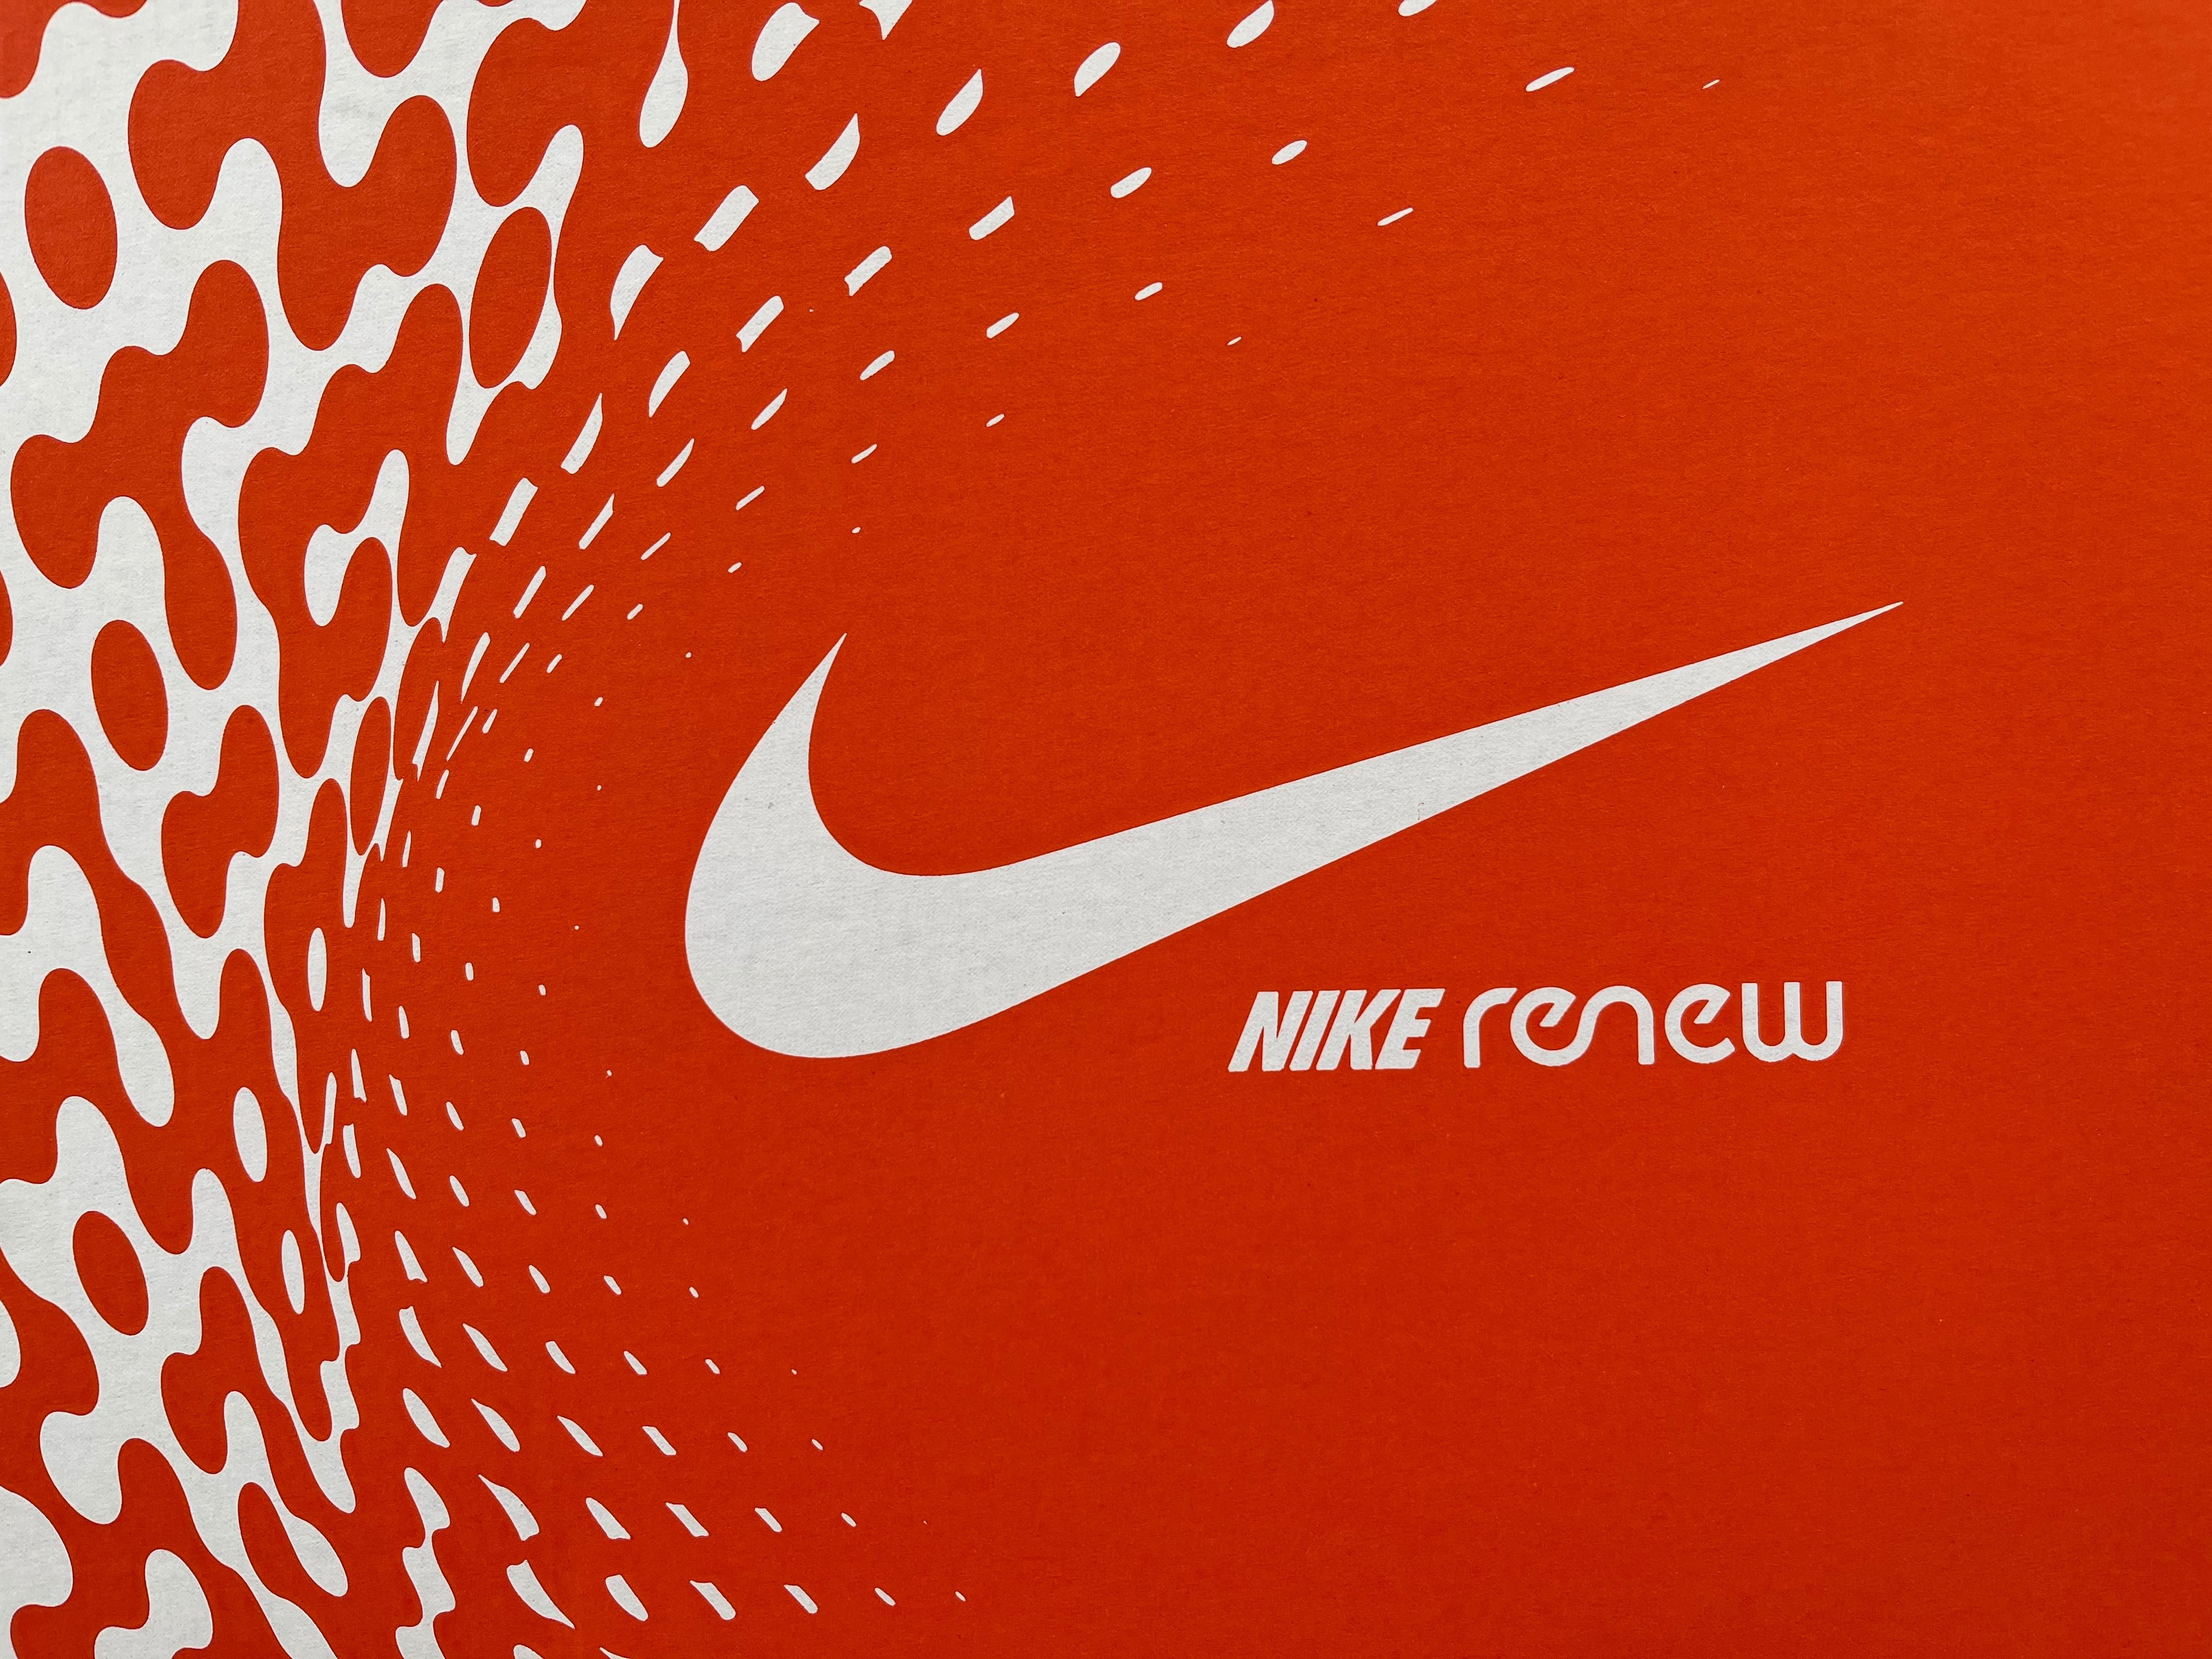 Нови маратонки Nike